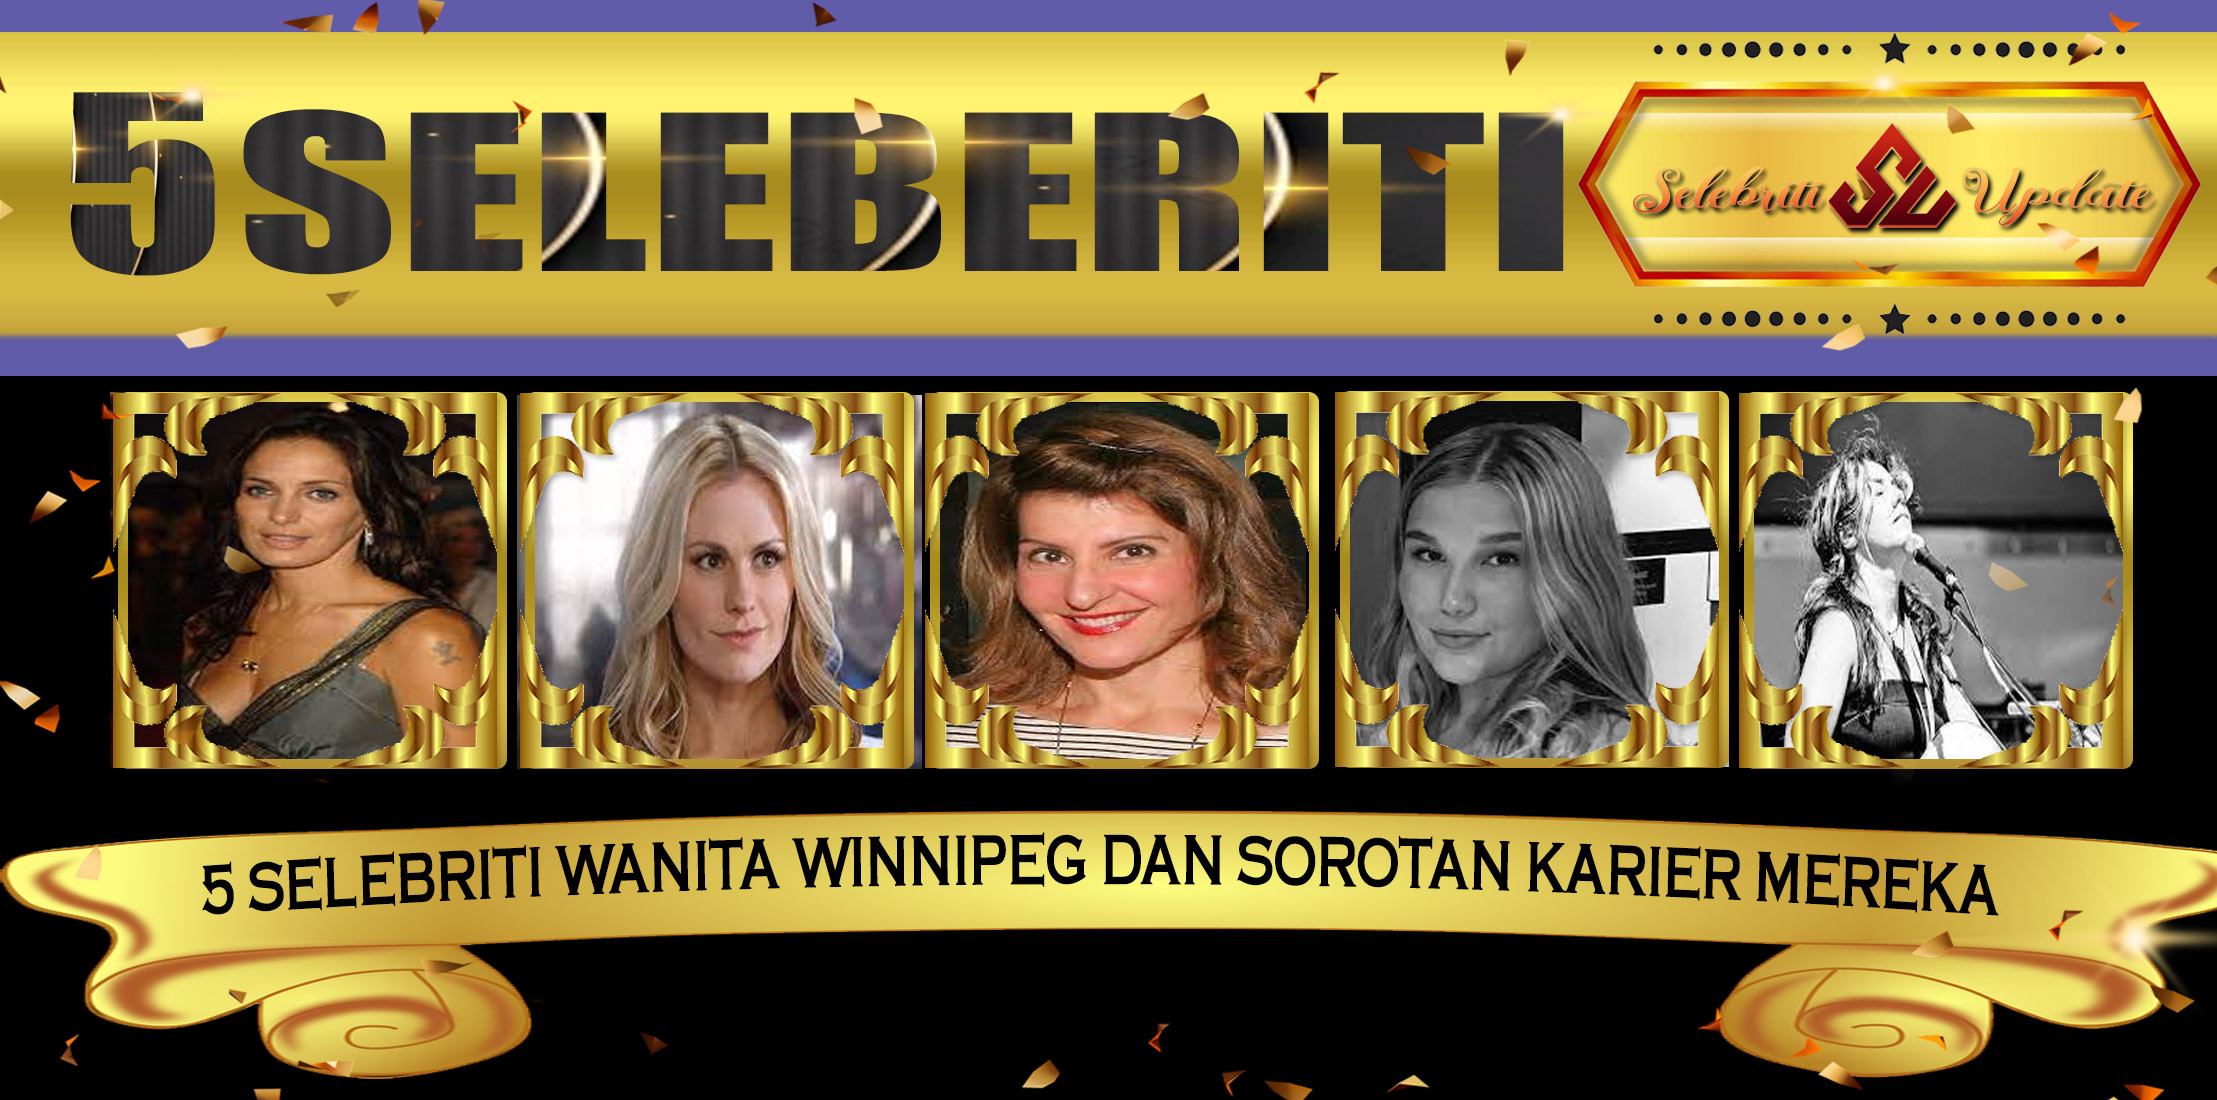 5 Selebriti Wanita Winnipeg